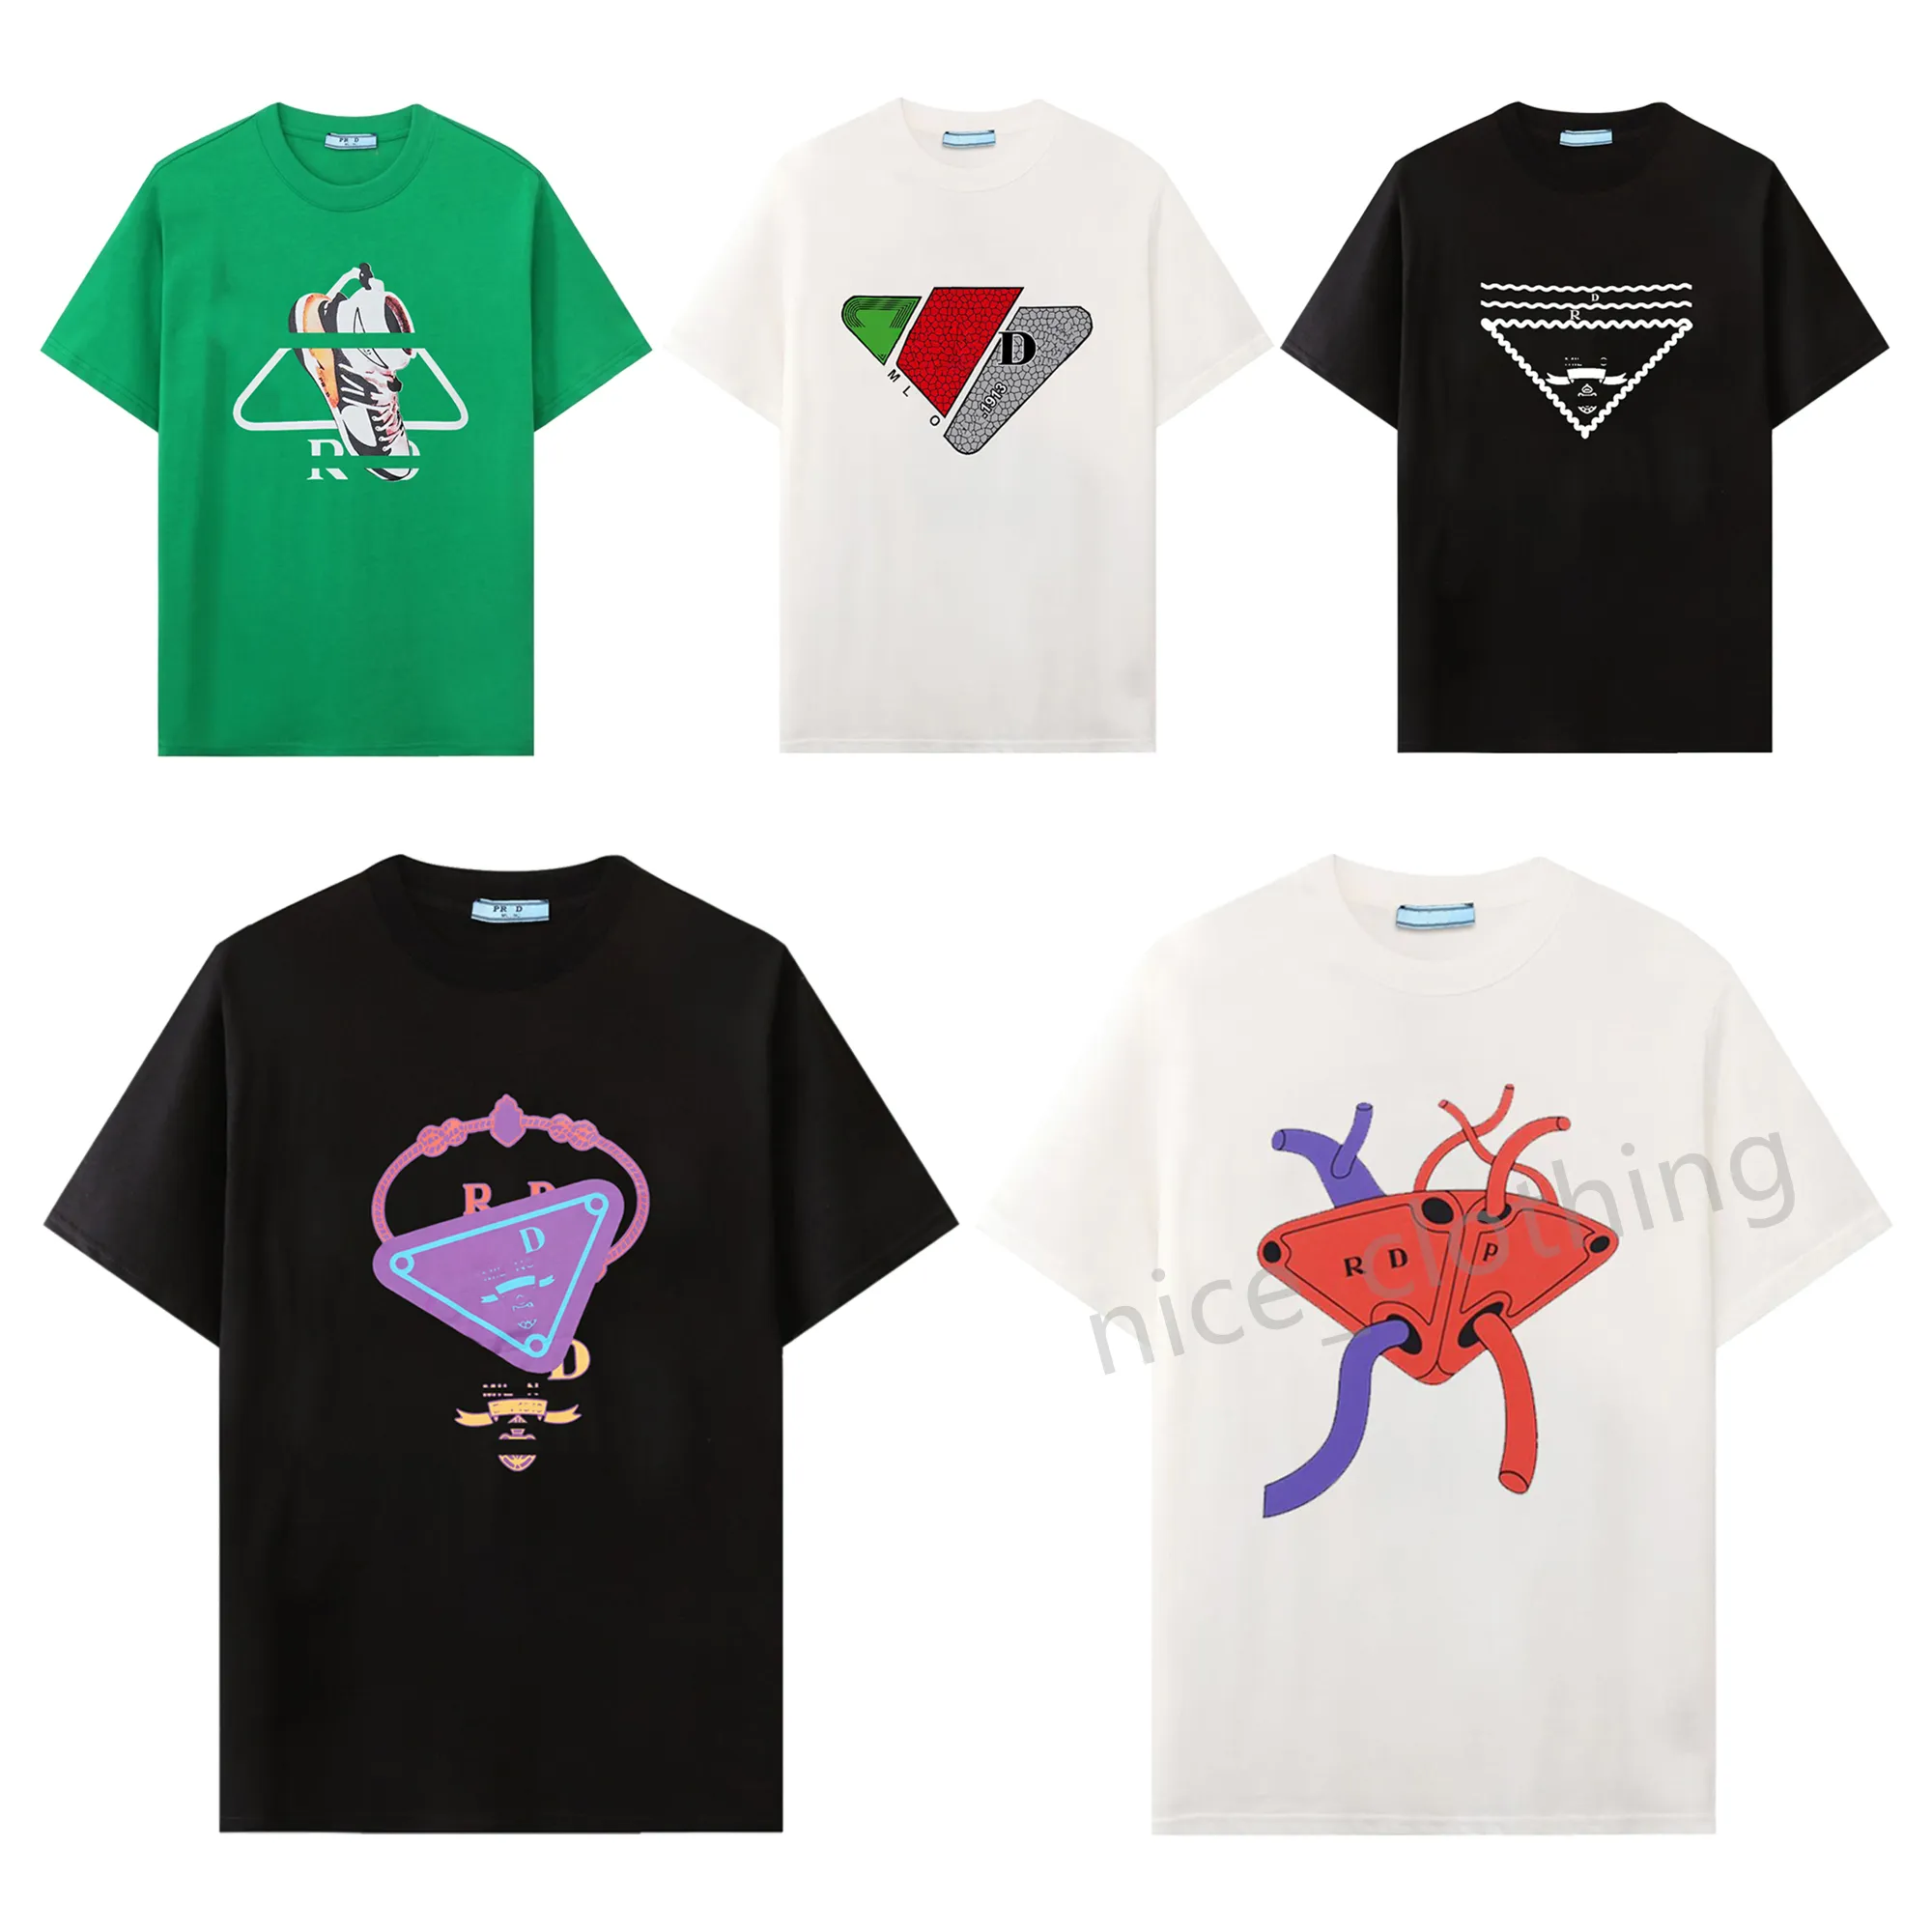 Camiseta de diseñador de hombres de moda de verano tocina de lujo gráfico gráfico camiseta casual de la calle casual hombre y mujer unisex suelto de manga corta camisetas